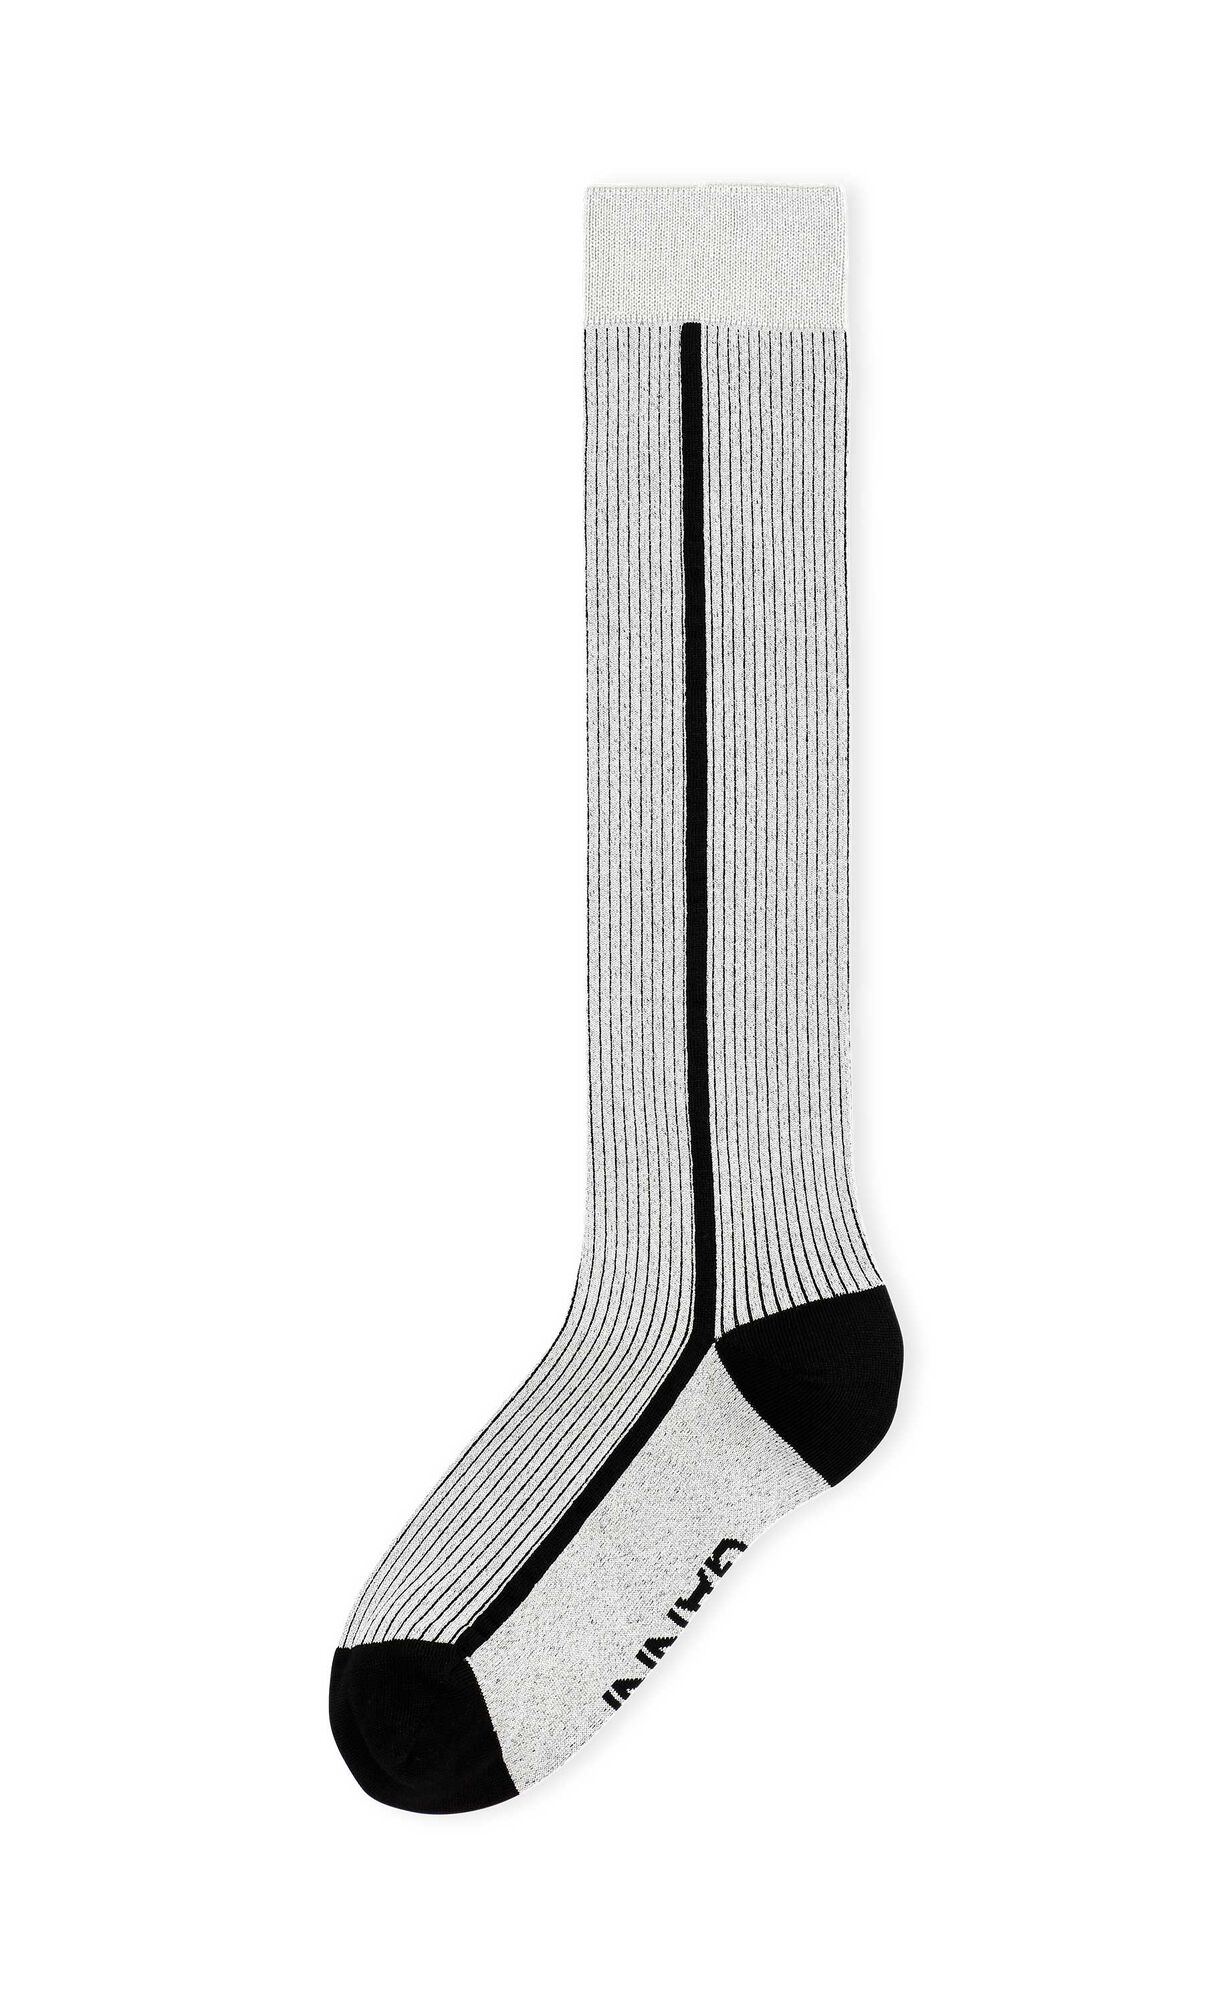 Knehøye sokker i lurex, Cotton, in colour Silver - 1 - GANNI